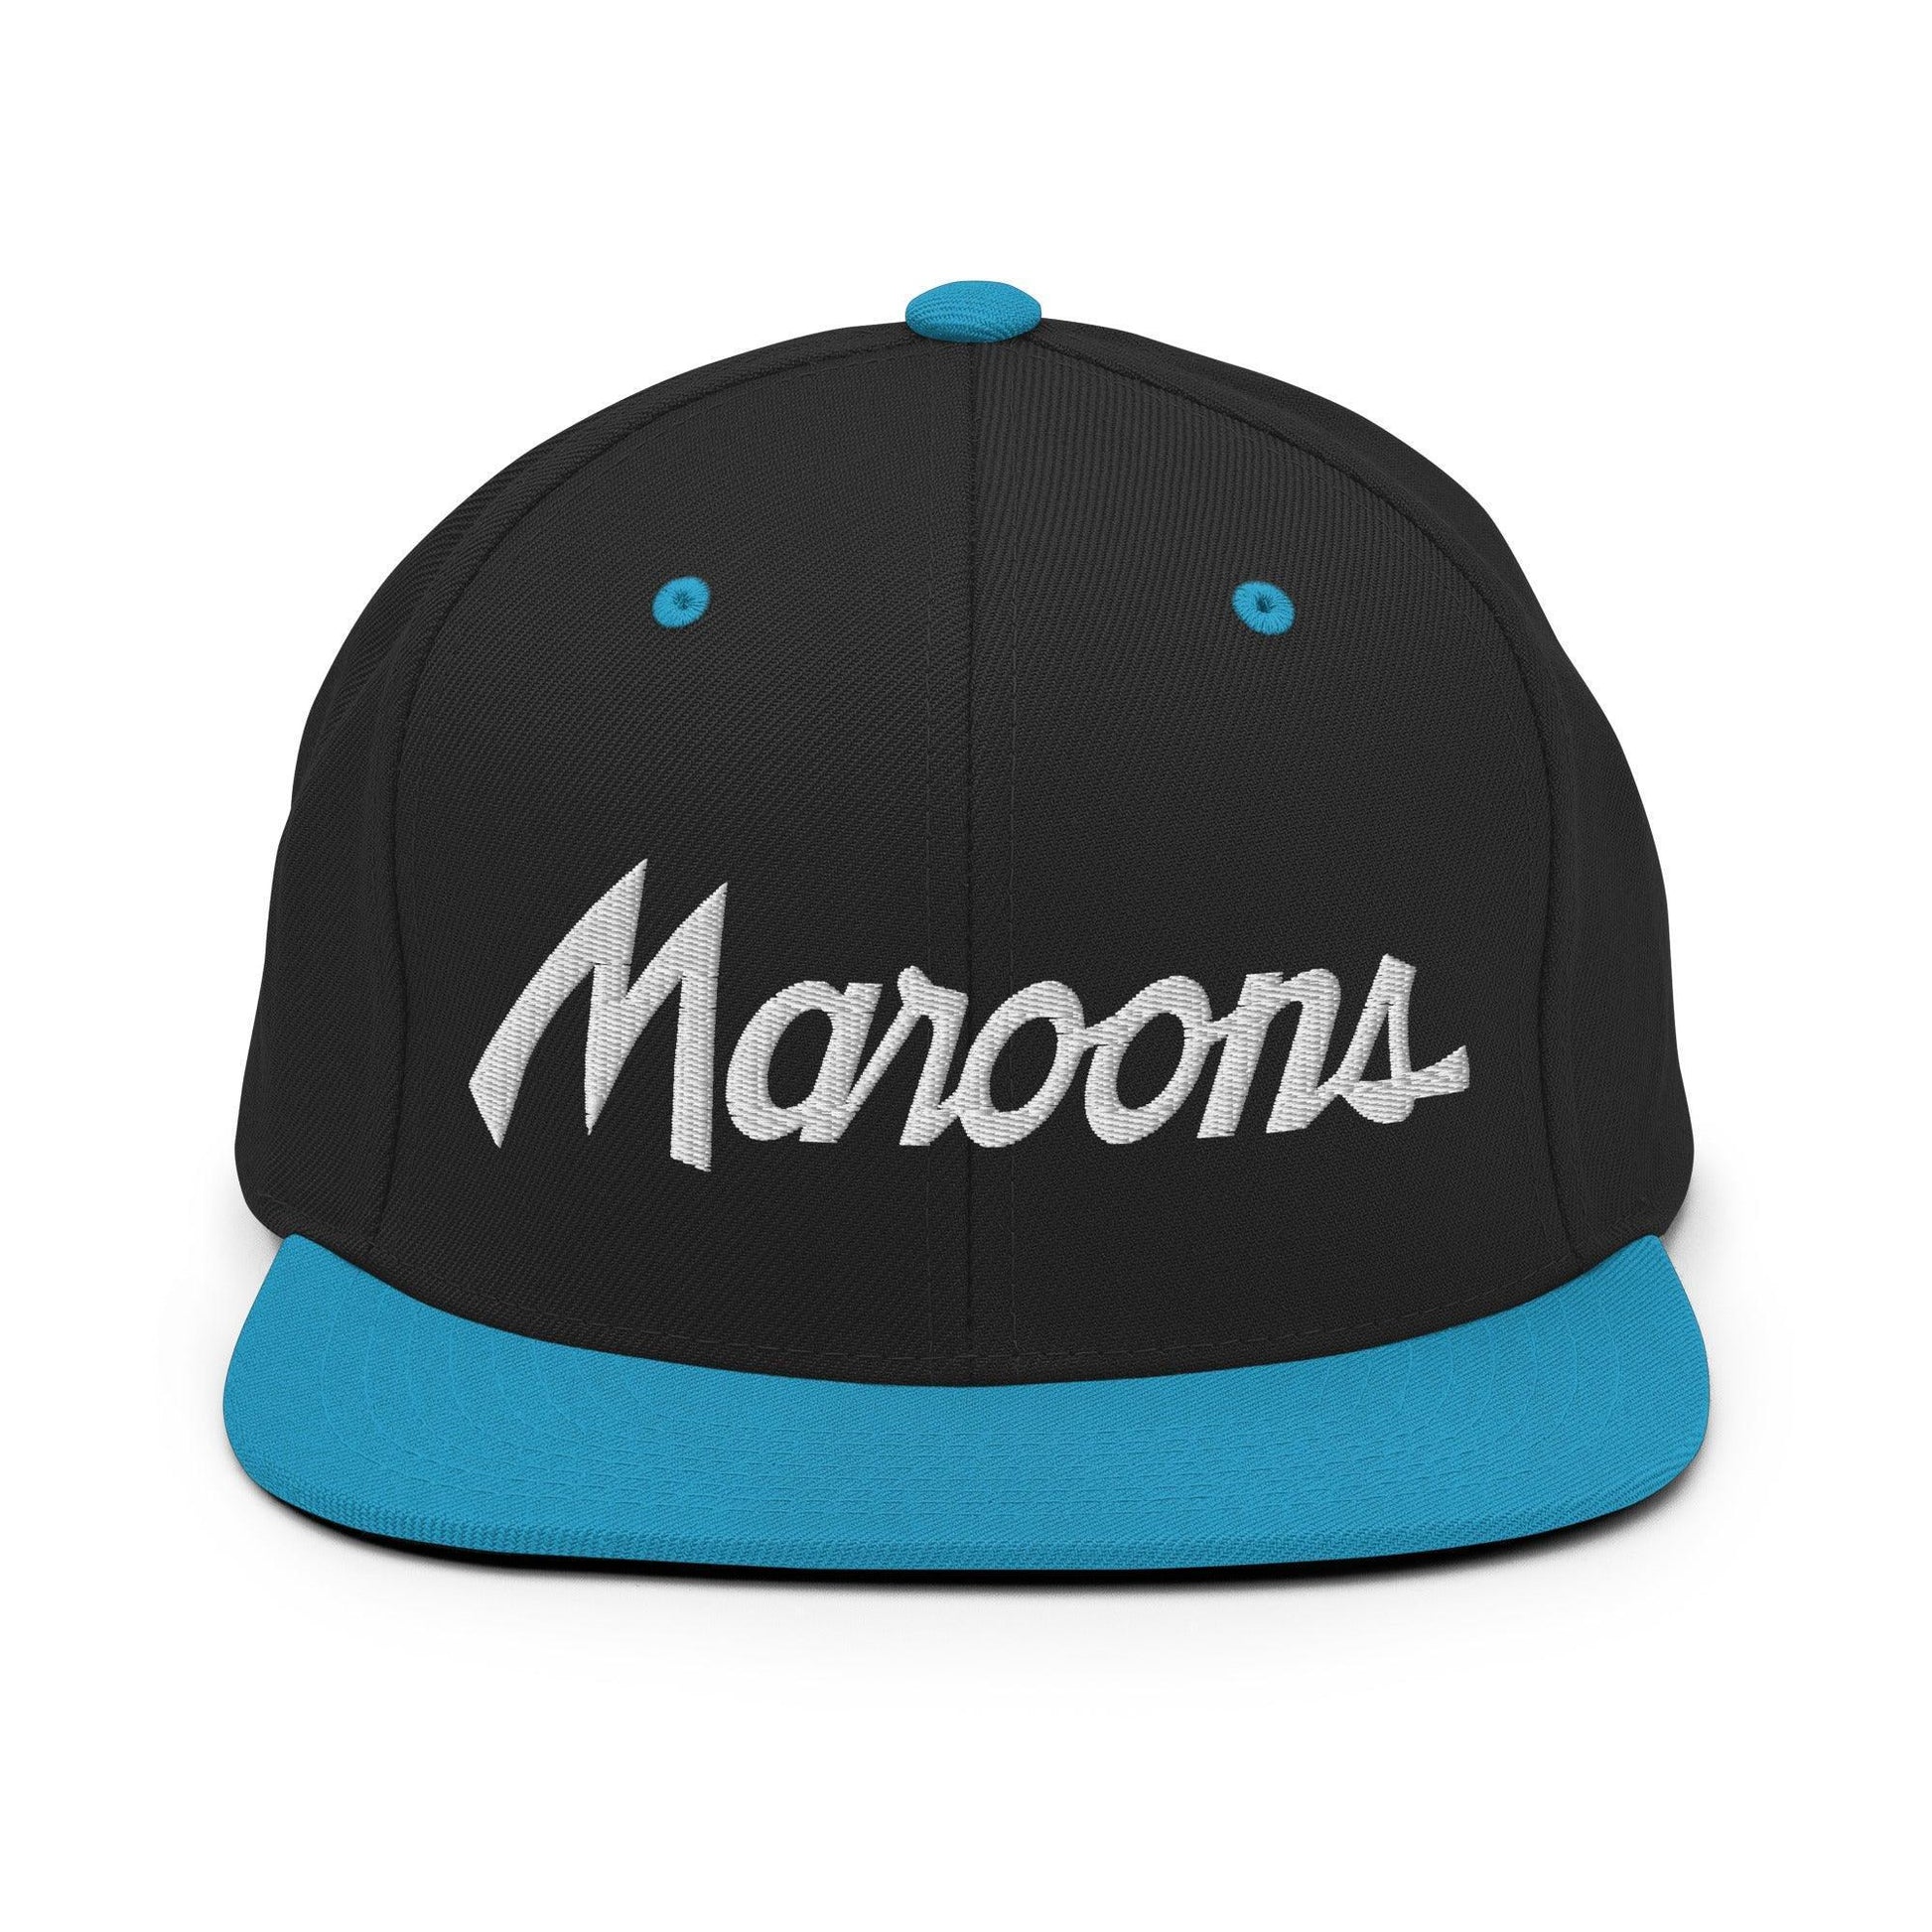 Maroons School Mascot Script Snapback Hat Black/ Teal